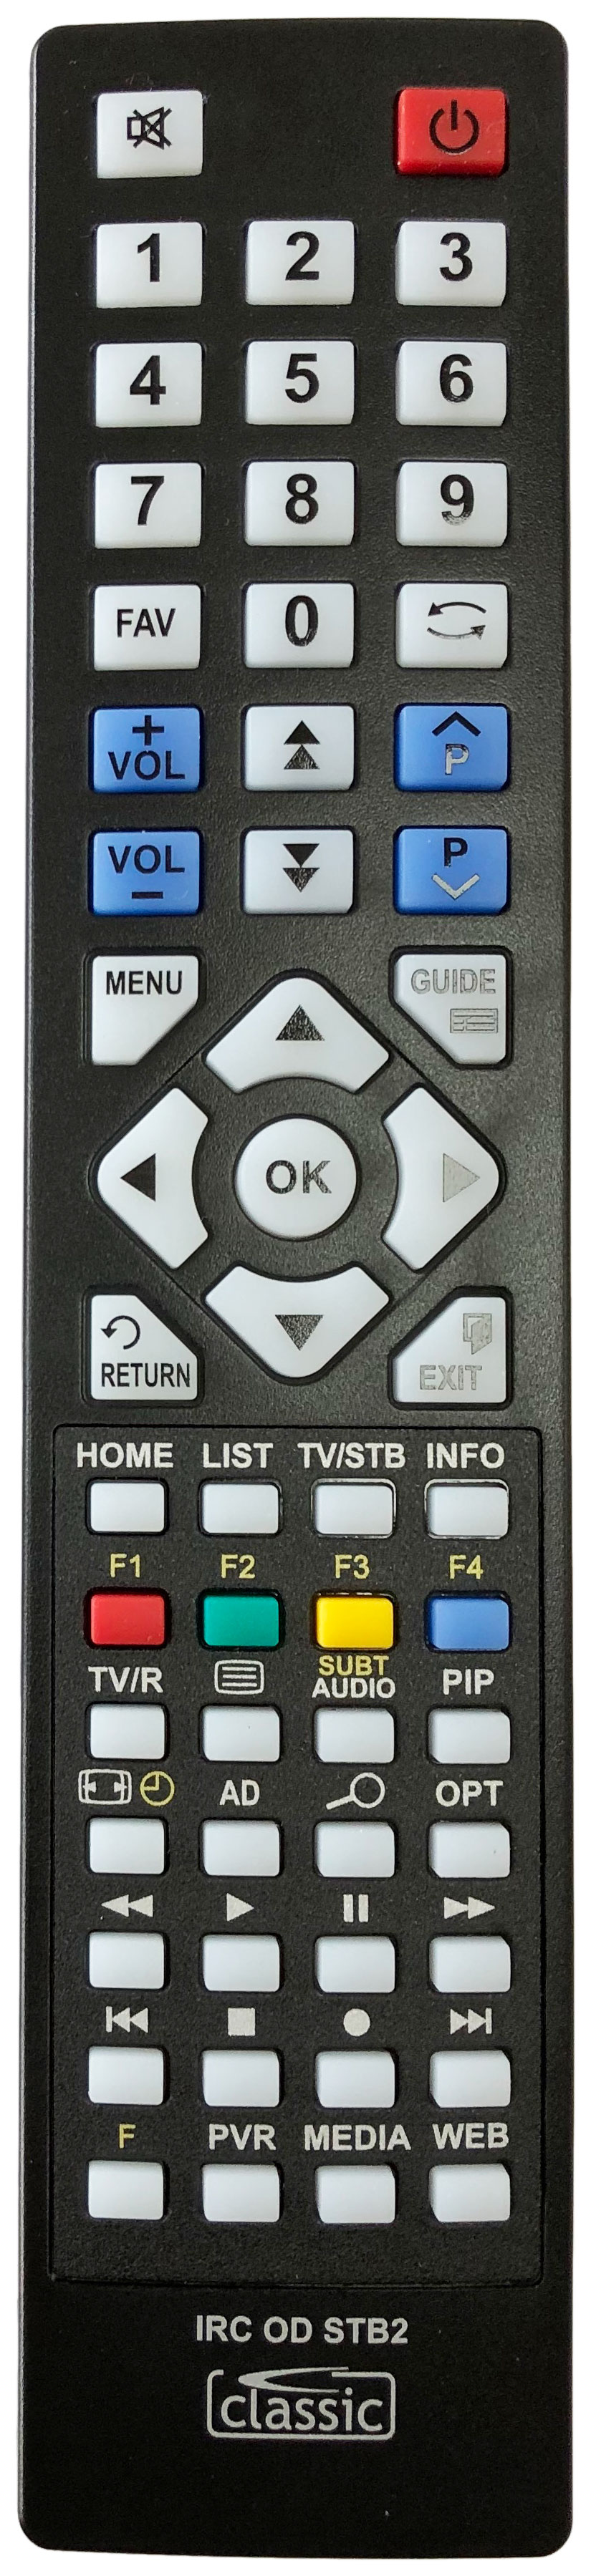 PHILIPS DTR5520 Remote Control